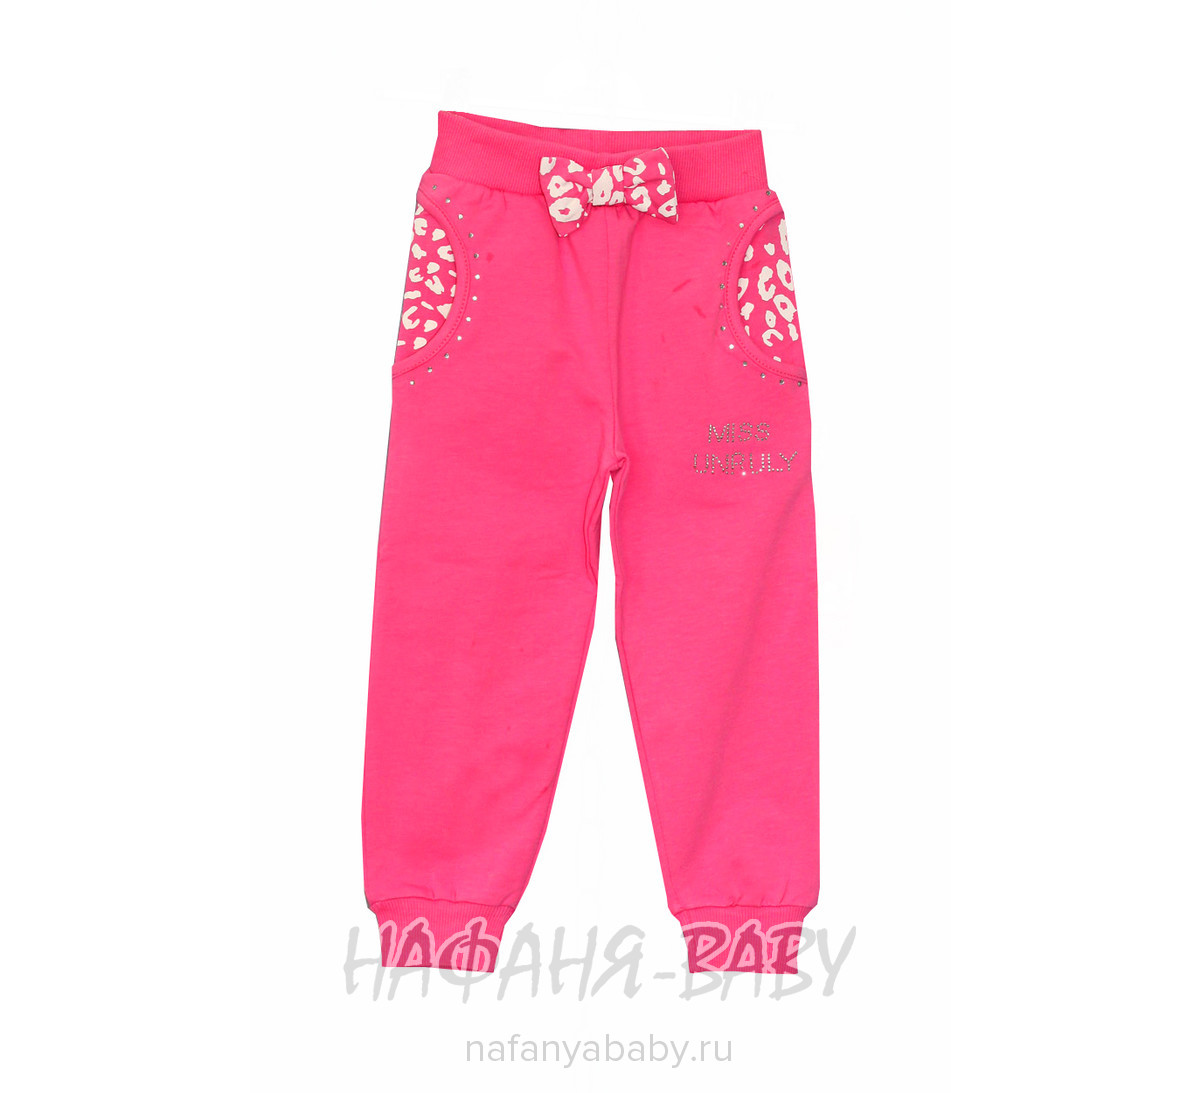 Детские брюки UNRULY, купить в интернет магазине Нафаня. арт: 4660.